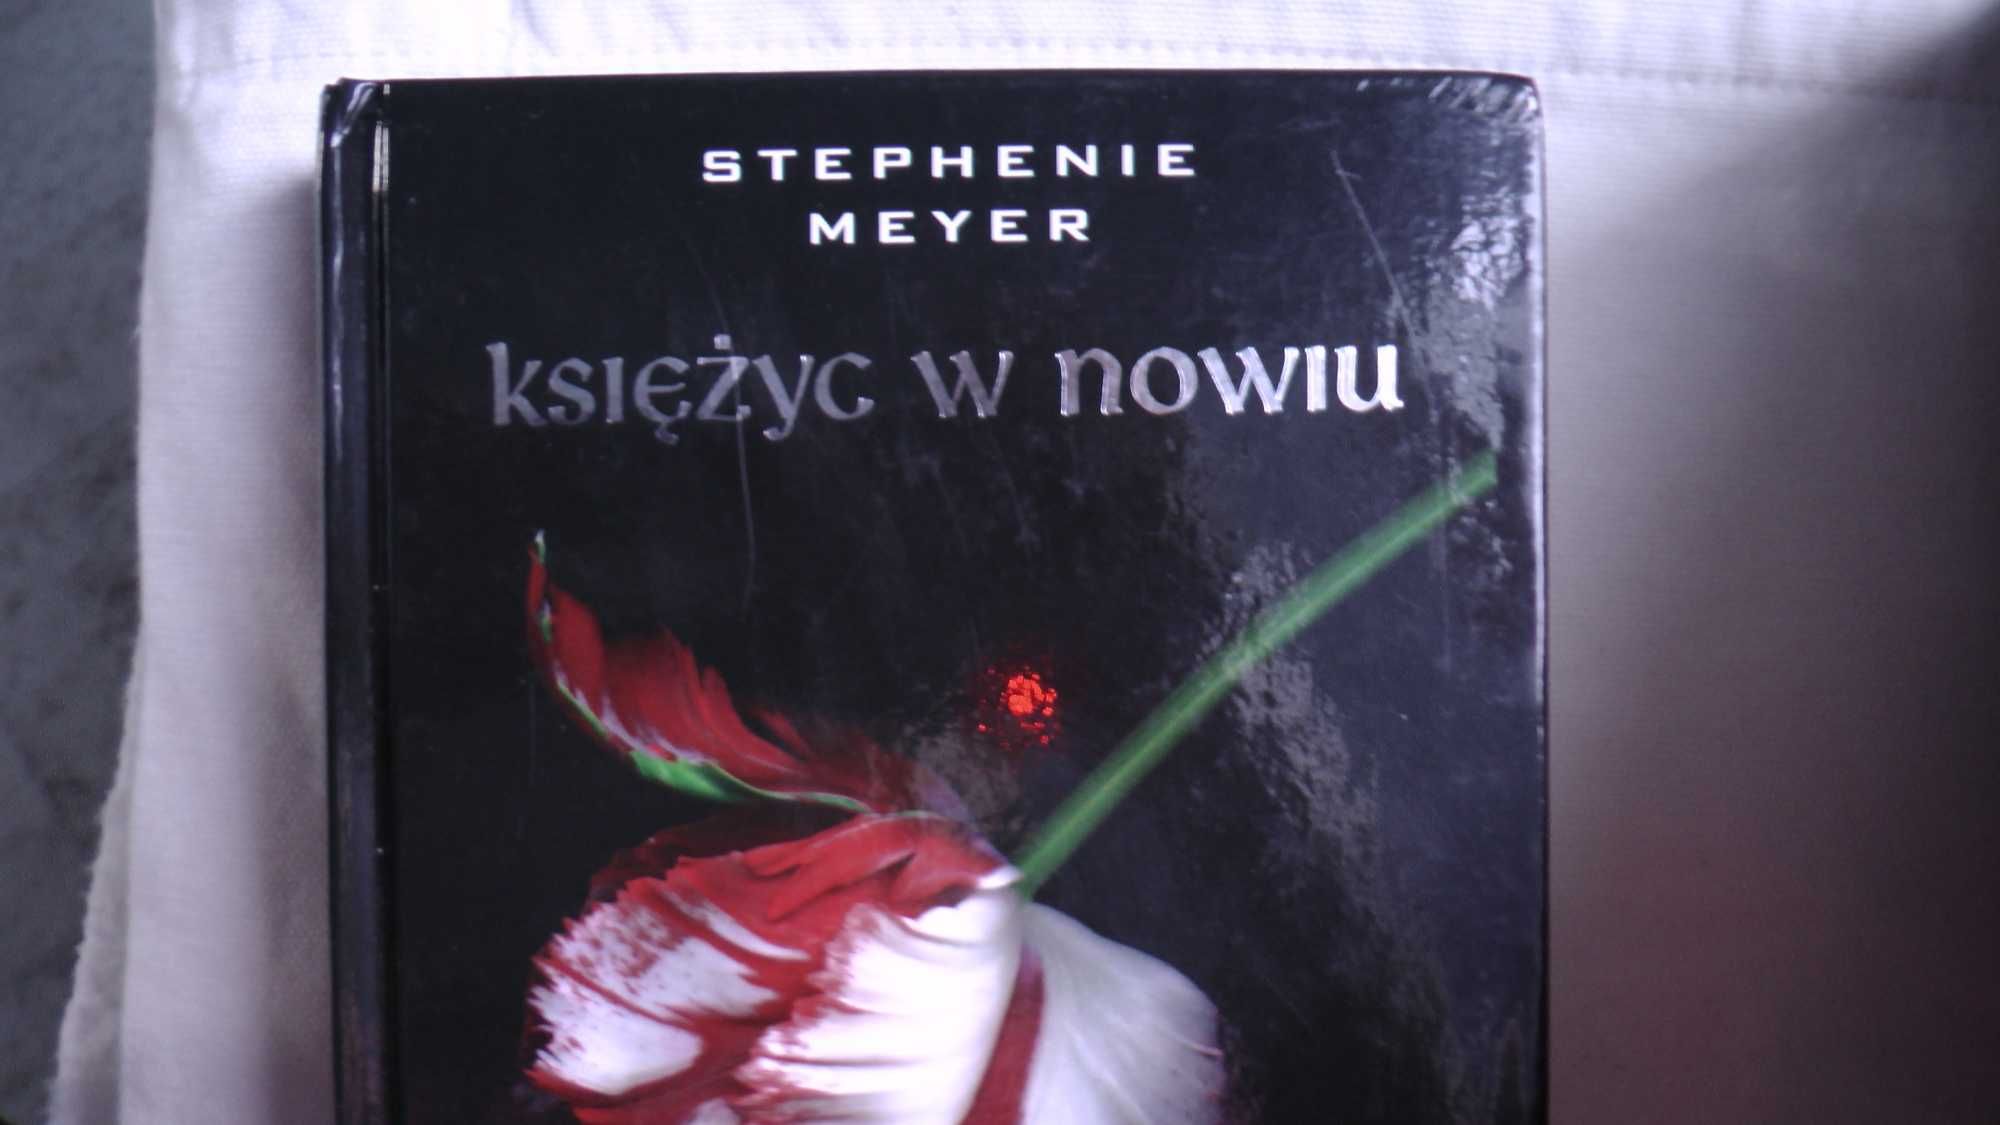 Zmierzch Saga Stephenie Meyer 4 tomy oprawa twarda